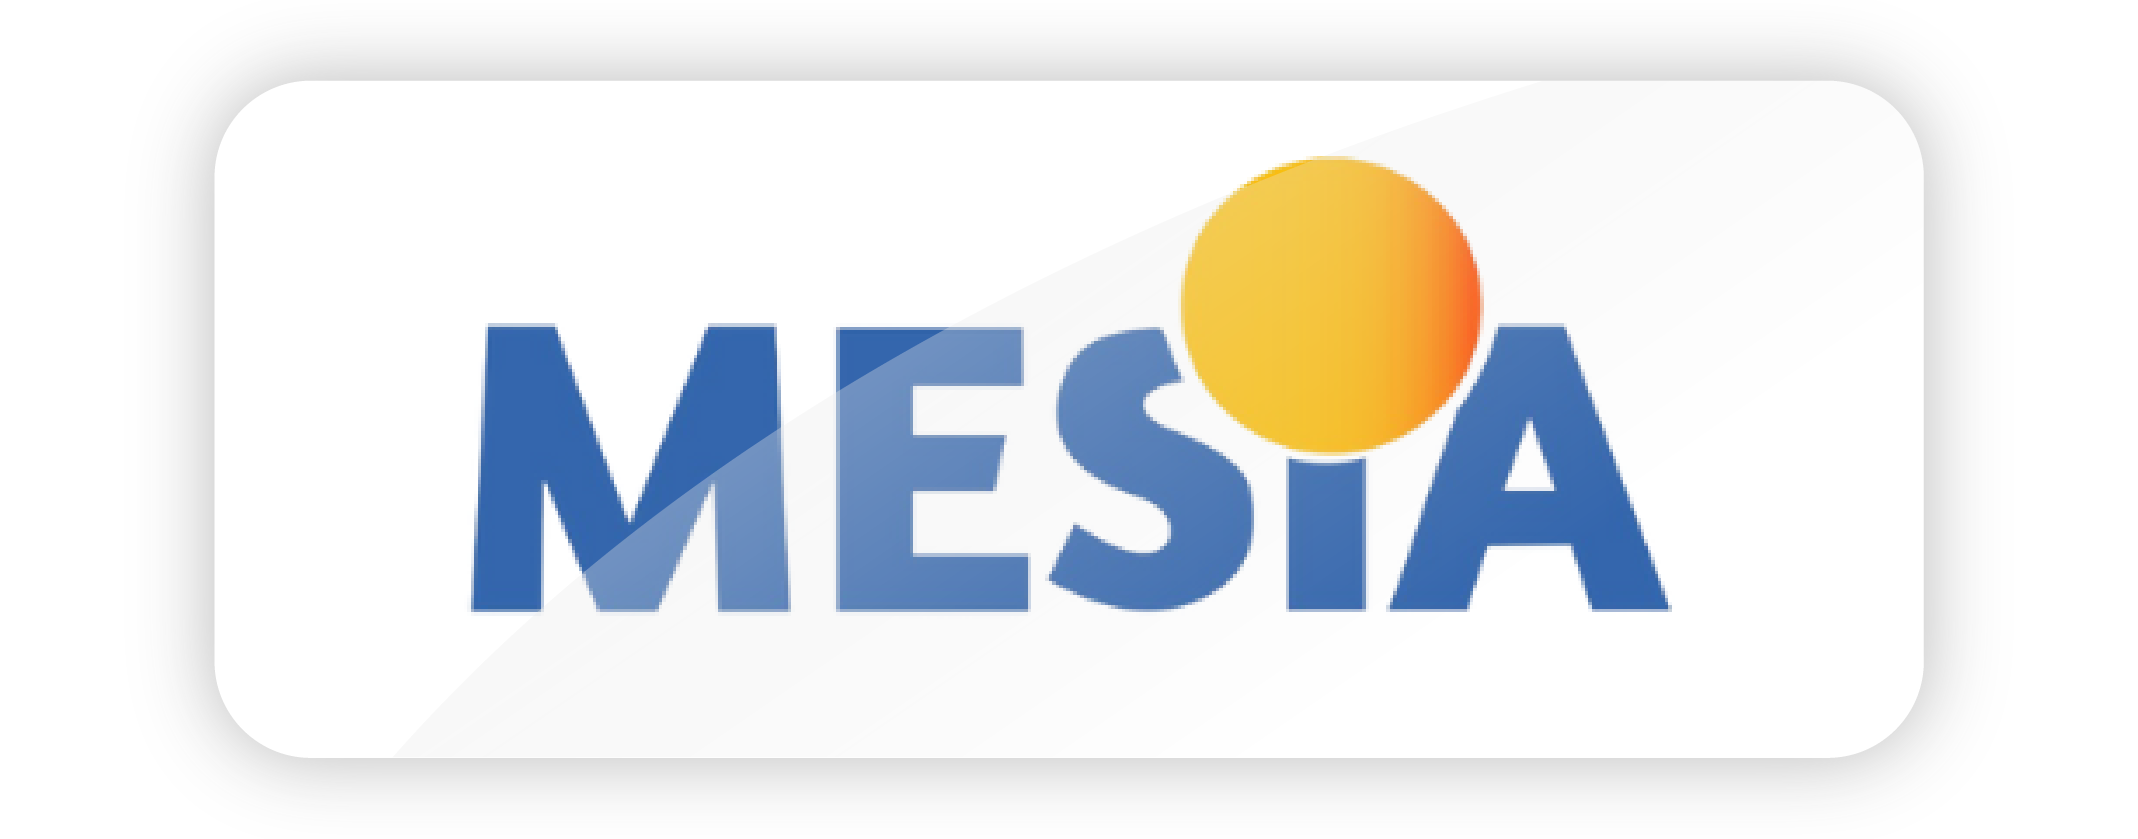 Mesia logo